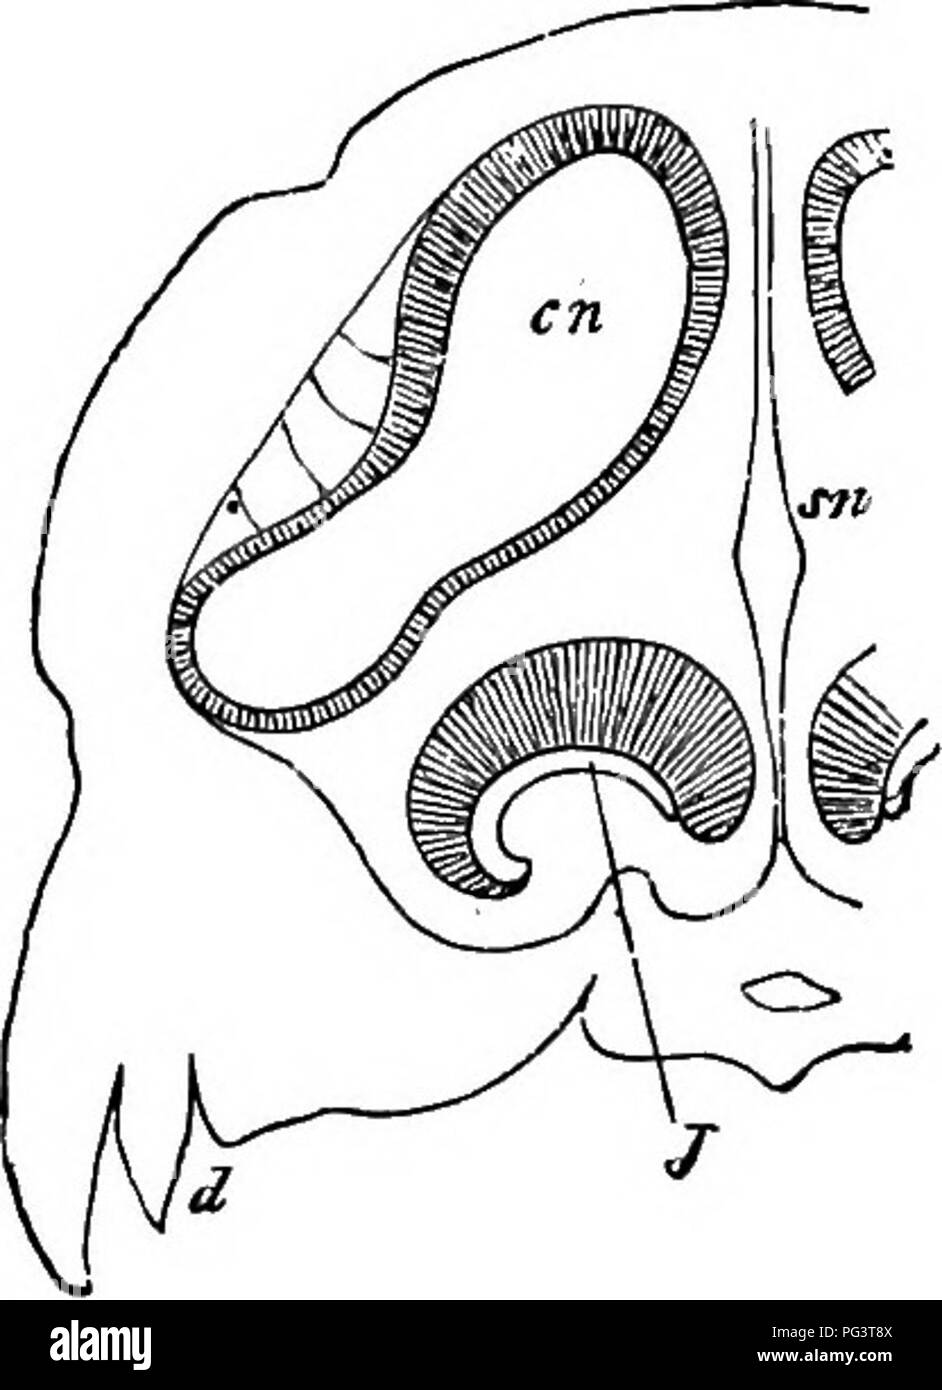 . Gli elementi di embriologia . Embriologia. λir.] L'organo nasale. 399 Alla fenestra ovalis. Questi ossicoli, che sorgono maialy dalla mandibola hyoid e archi (m'de p. 403), vengono dapprima integrati nel tessuto connettivo in prossimità della cavità timpanica, ma sul pieno sviluppo di questa cavità, diventano appareptly collocati all'interno di esso, anche se davvero avvolto nella mucosa fodera. Organo nasale. Nei mammiferi la formazione generale delle sezioni anteriore e posteriore delle narici è lo stesso come in uccelli; ma una evoluzione dal lato interno del canale tra le due aperture deriva Foto Stock